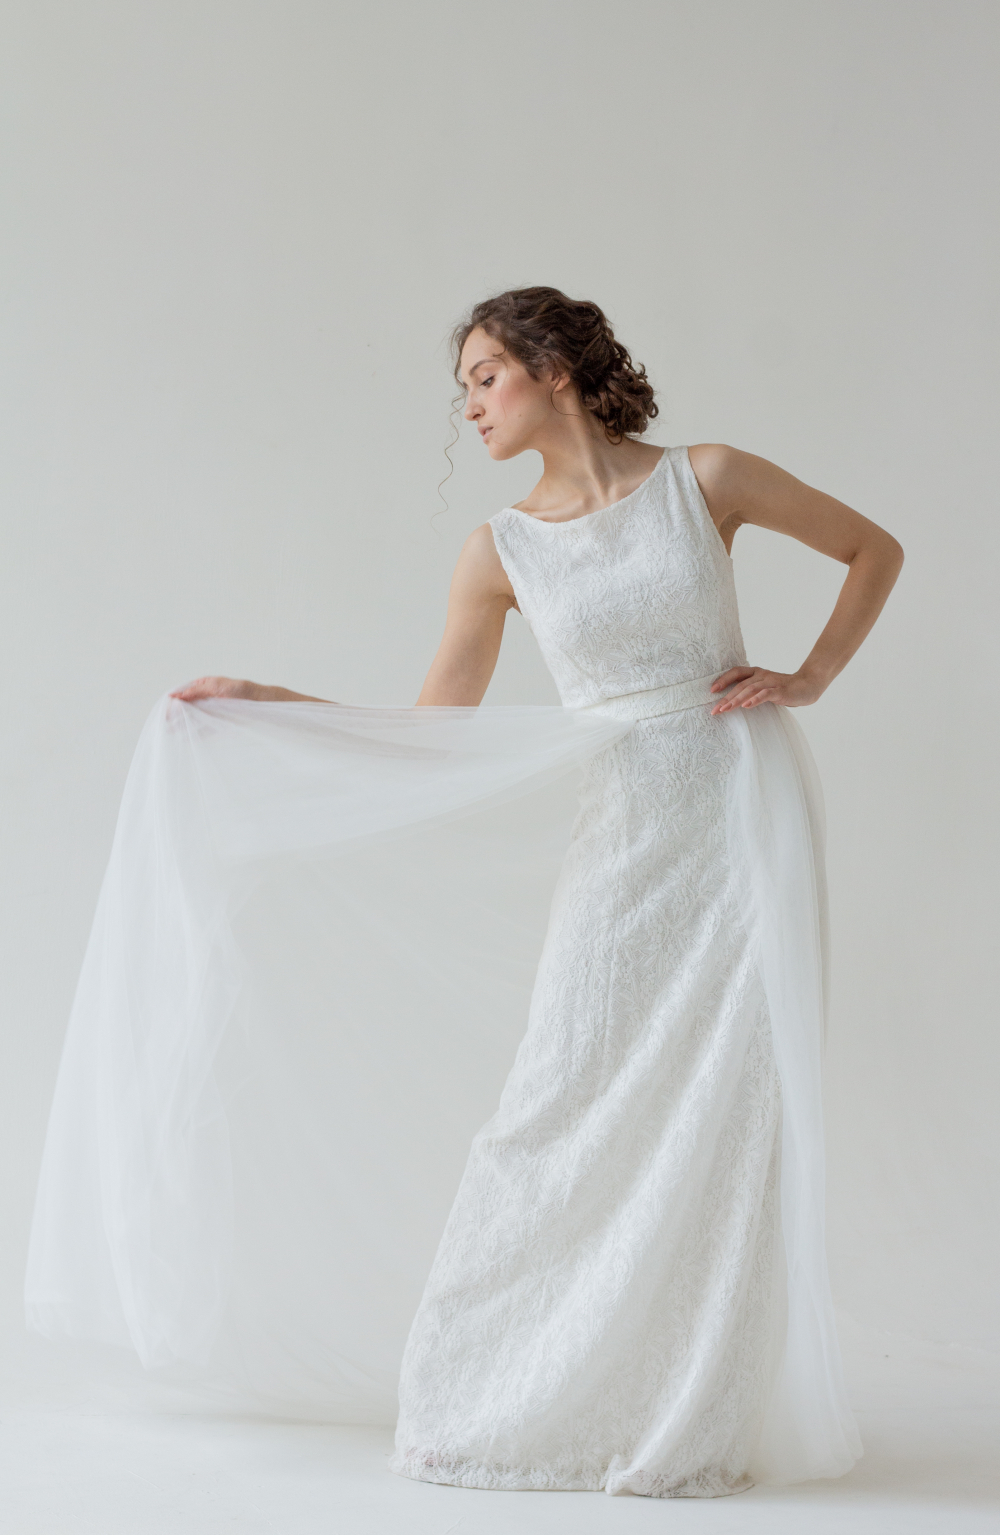 Кружевное, силуэтное свадебное платье молочного оттенка со съемной юбкой из фатина. Подчеркивает фигуру. Фактурное, цветочное кружево украшает платье. Размер 42-44.